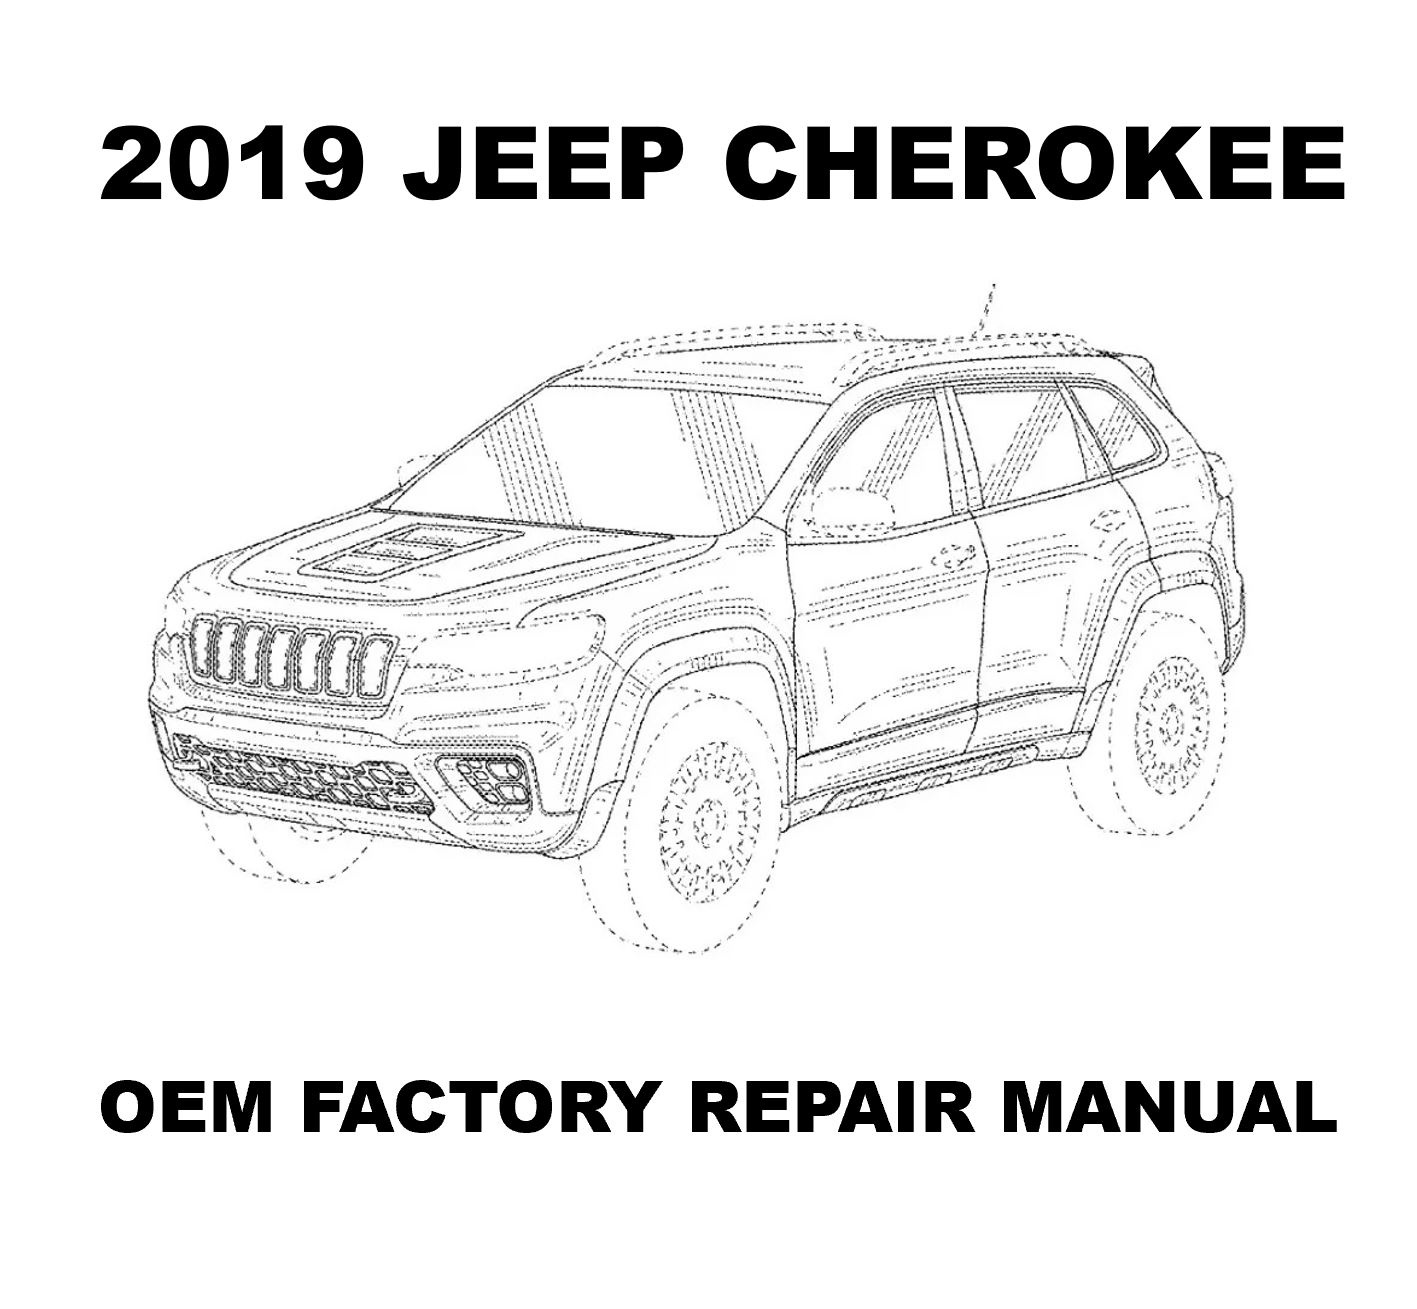 2019_jeep_cherokee_repair_manual_1417